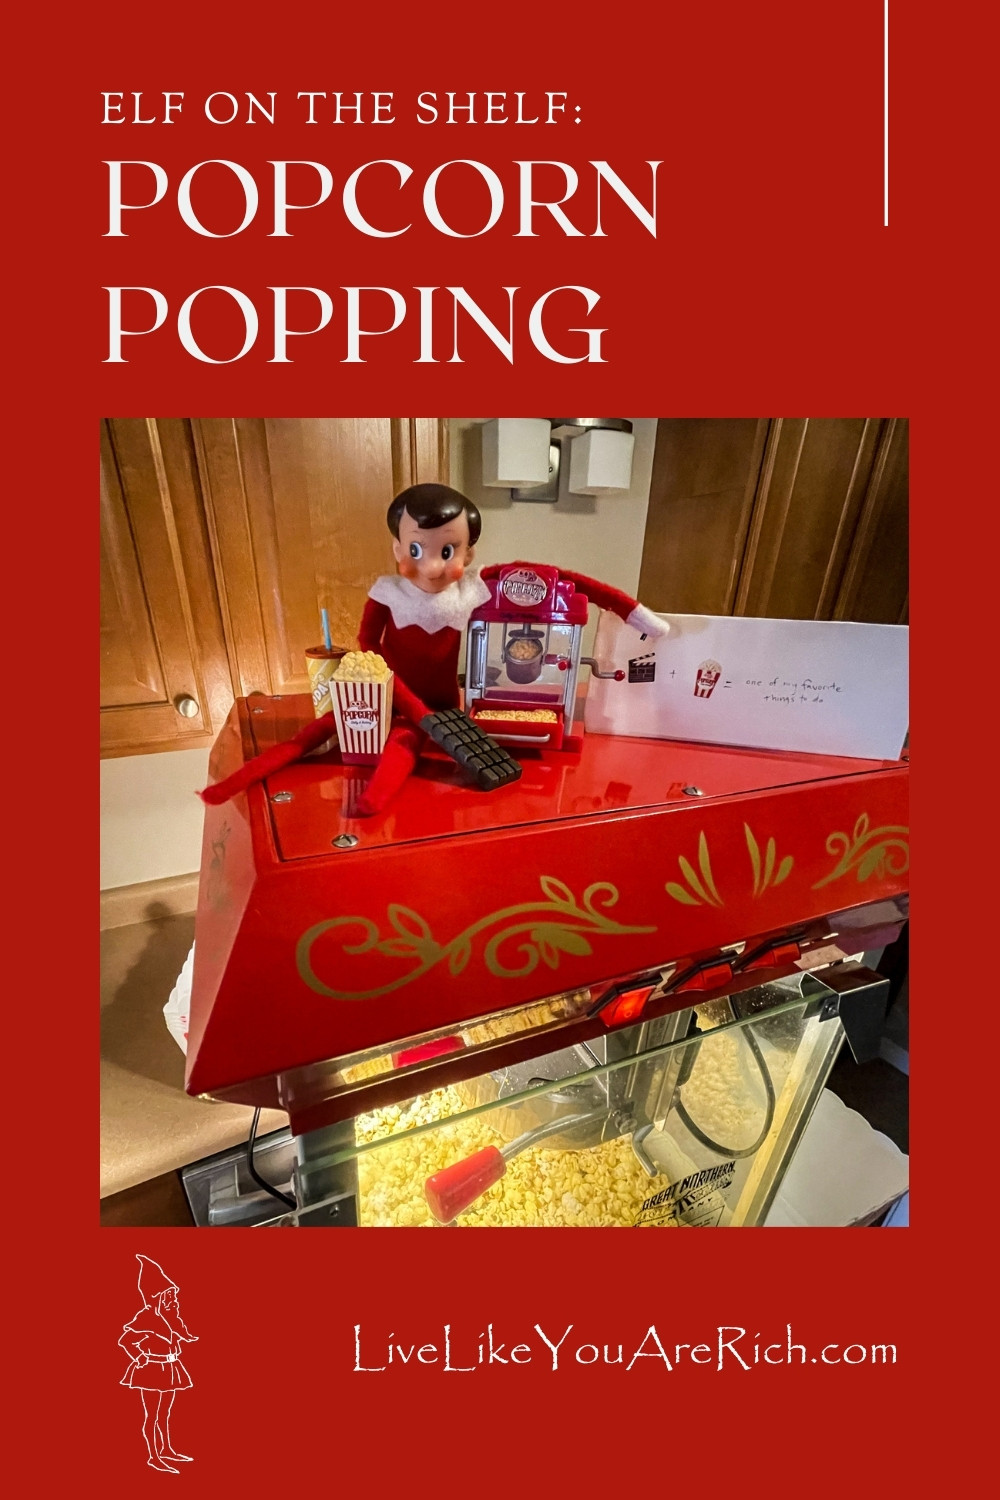 Elf on the Shelf: Popcorn Popping